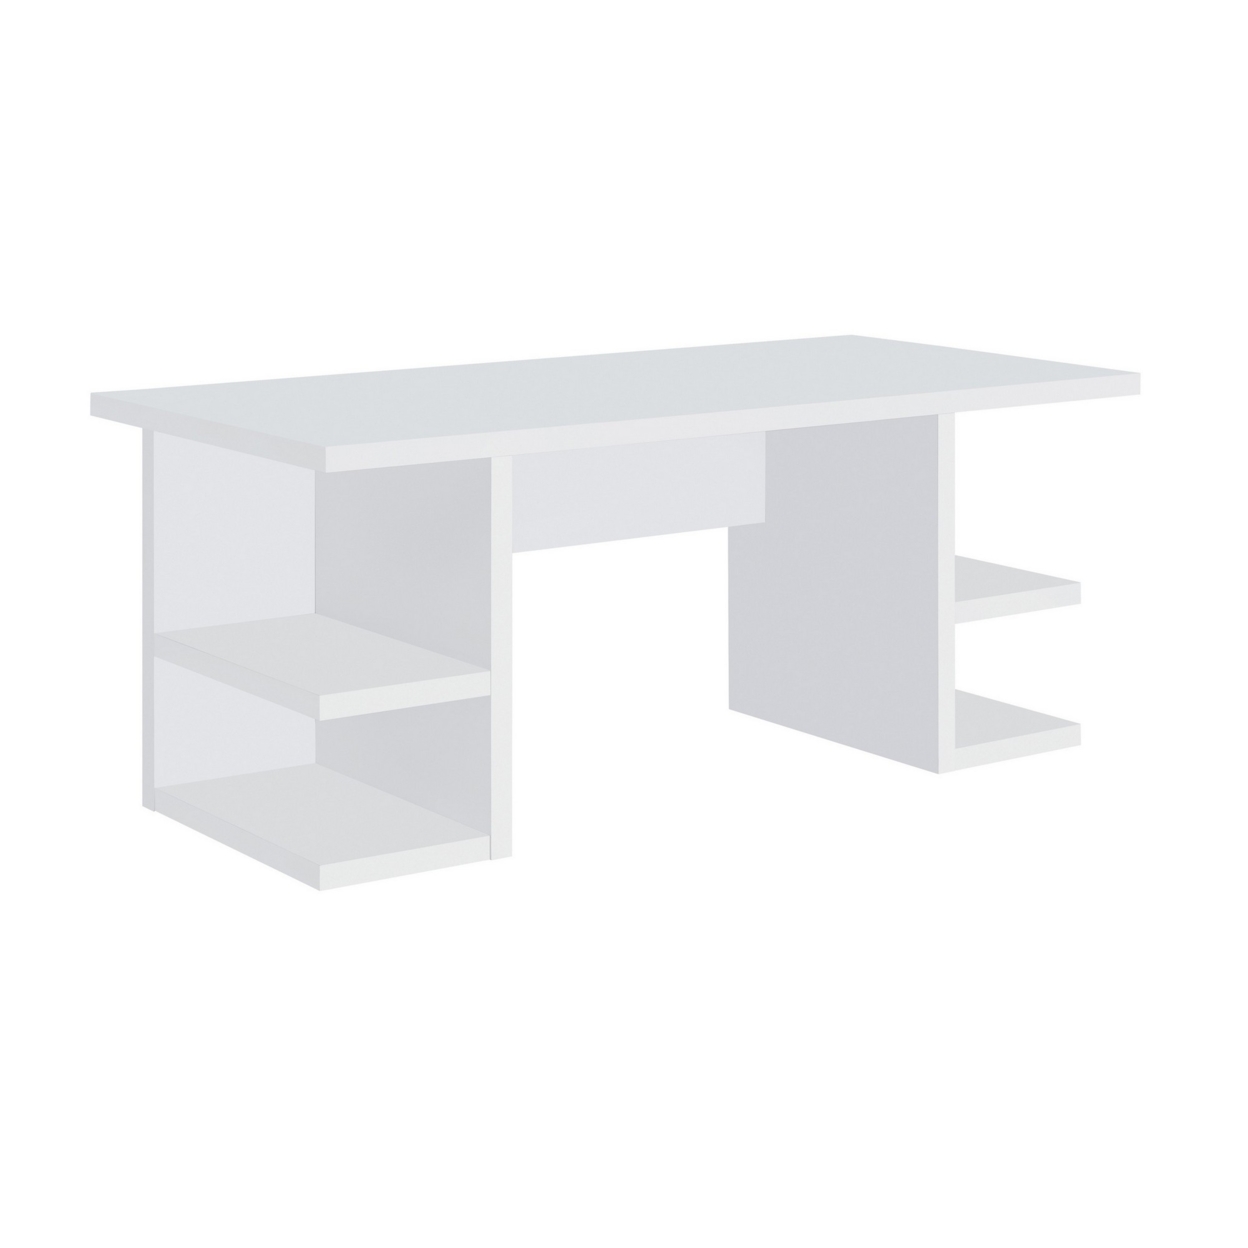 71 Inch Modern Rectangular Writing Desk, 4 Open Shelves, Crisp White Finish- Saltoro Sherpi